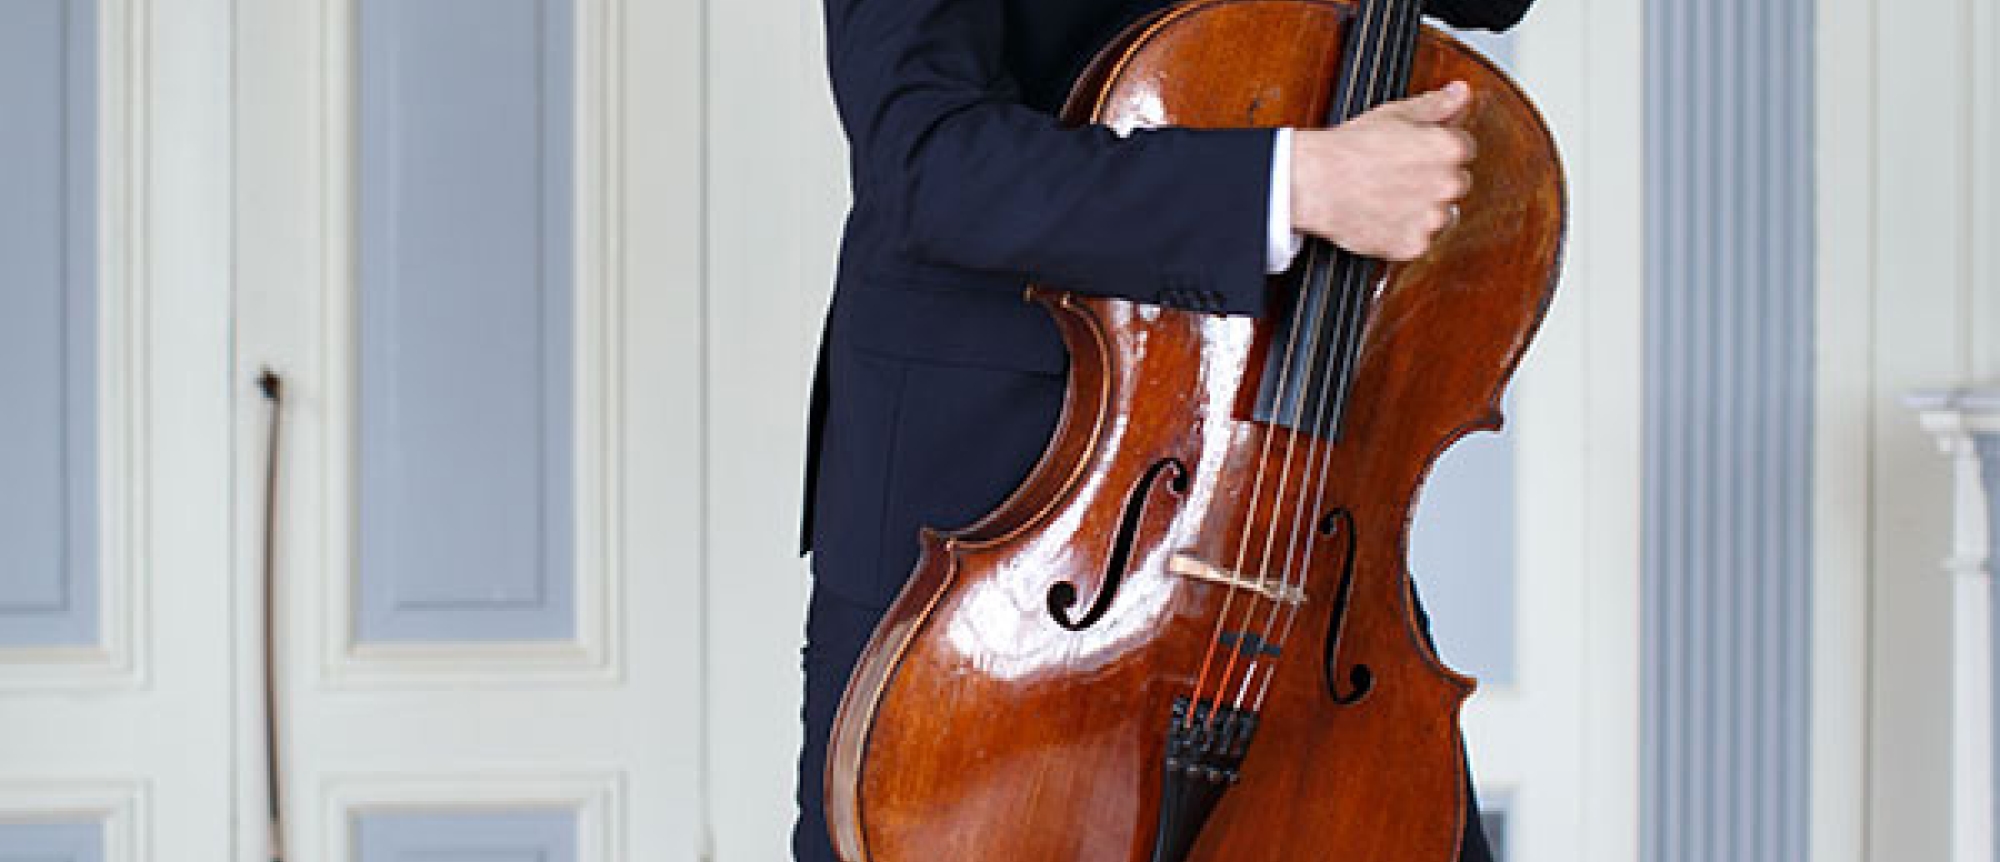 Aangenaam Klassiek Live: Joachim Eijlander - Cello